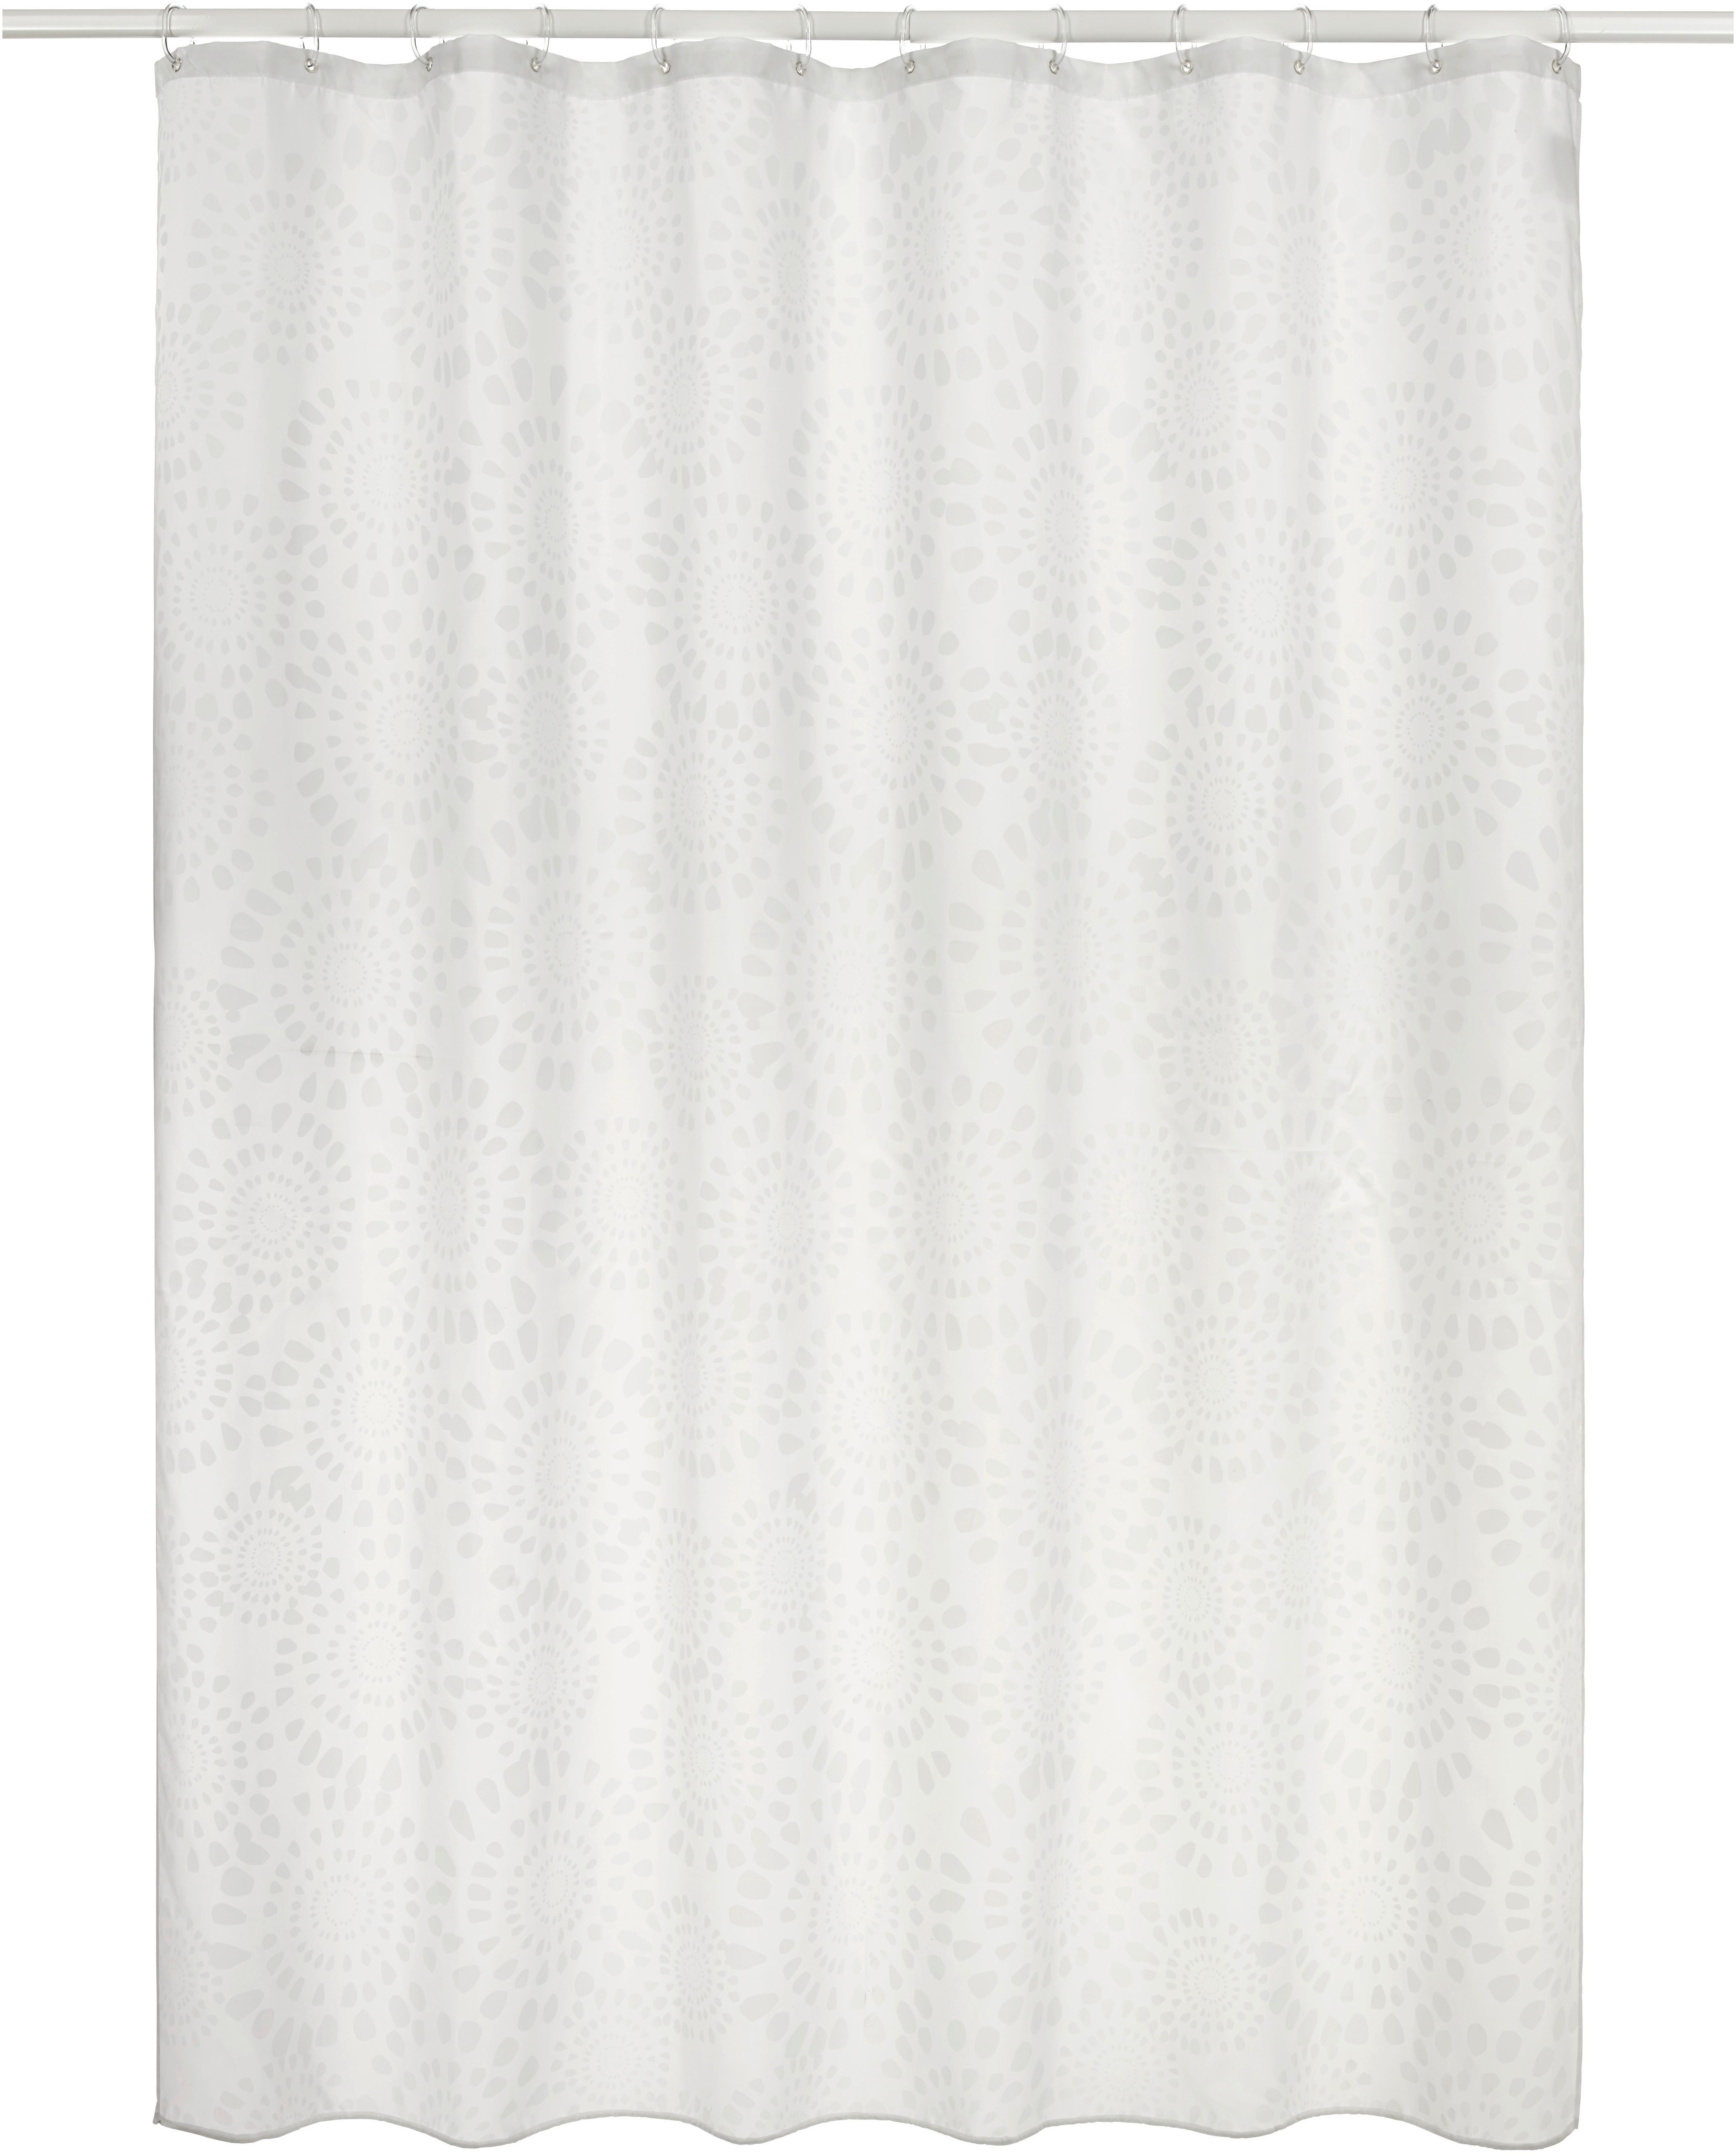 Duschvorhang Blanche in Weiß ca. 180x200cm